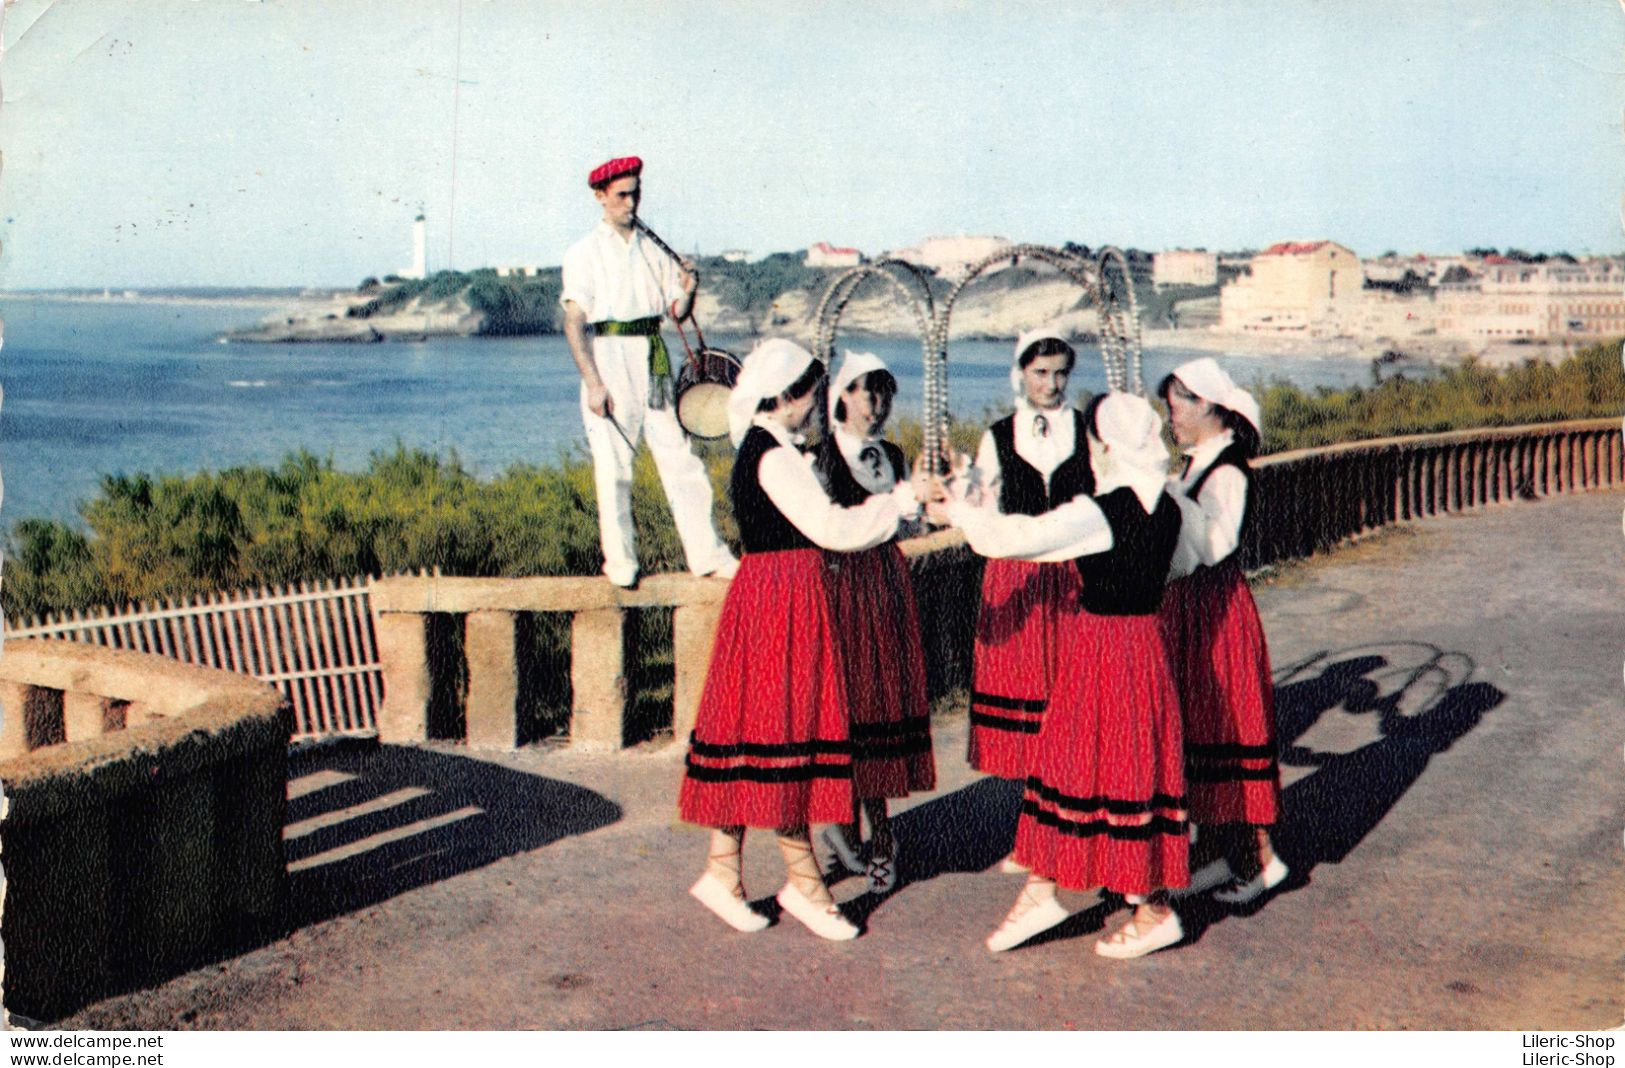 [64] Folklore - Costumes - Pays Basque - Groupe Folklorique Bi-Harri - Danse Des Arceaux - Cpsm PF 1962 ( ͡◕ ͜ʖ ͡◕) ♦ - Tänze